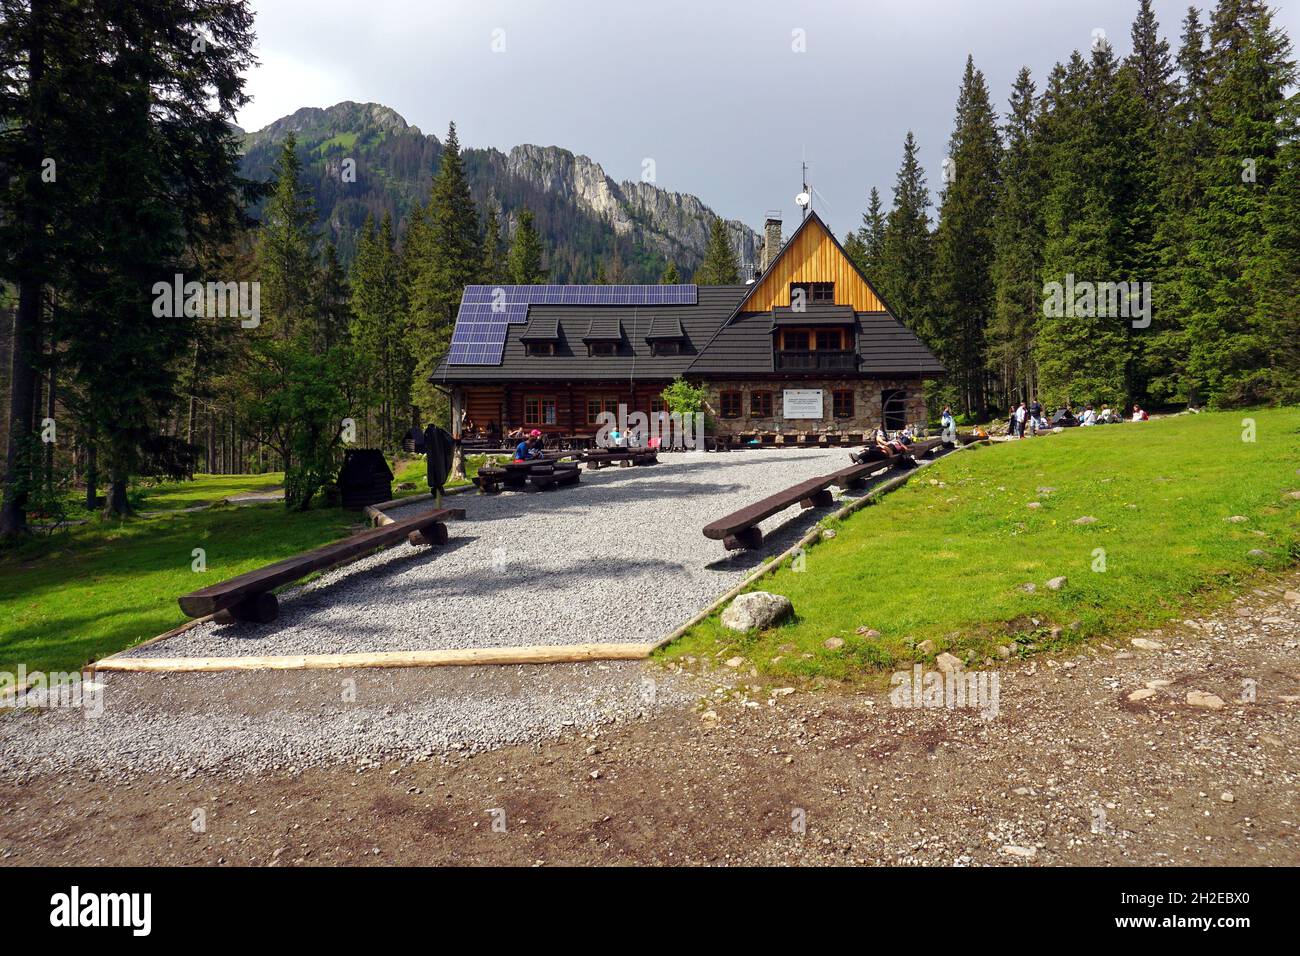 Mountain Shelter in Koscieliska Valley, Tatra Mountains. May 2018, Tatra National Park, Poland Stock Photo